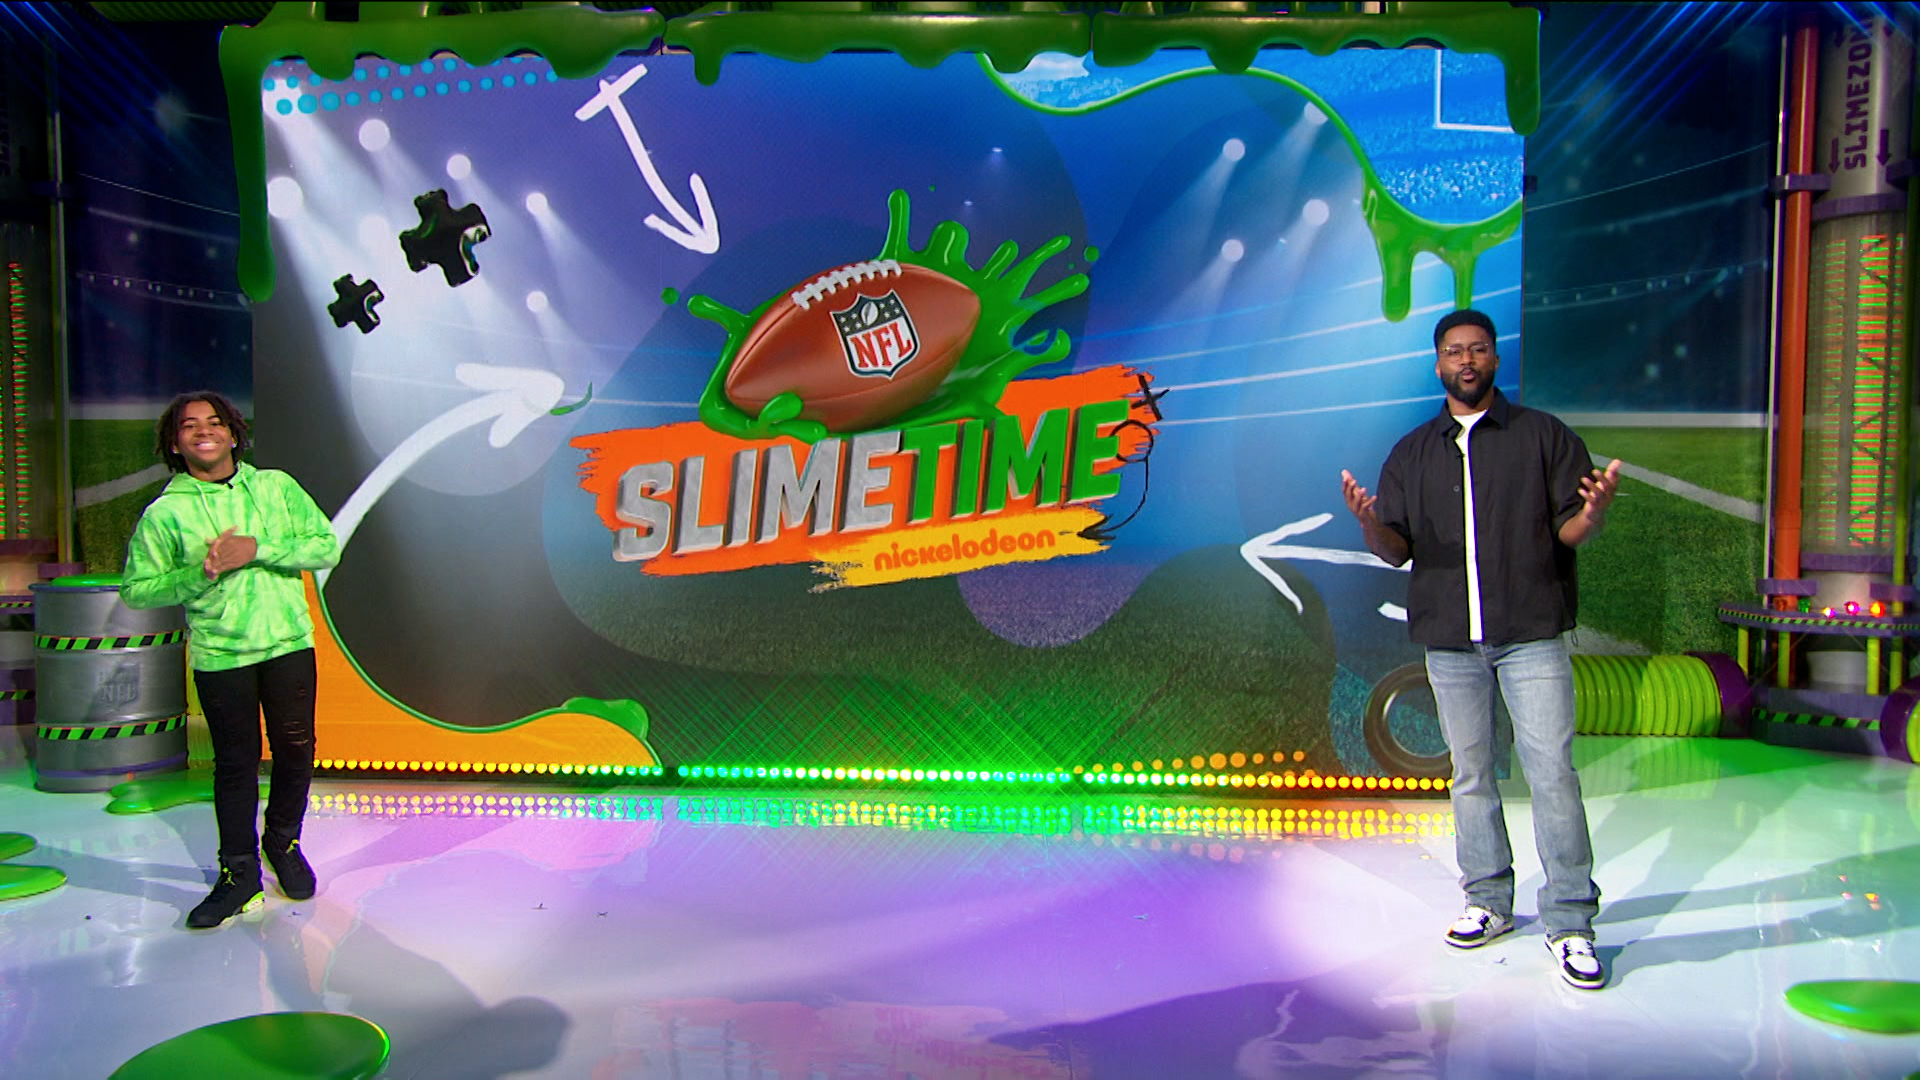 Watch NFL Slimetime Season 3 Episode 1: Week 1 - Full show on